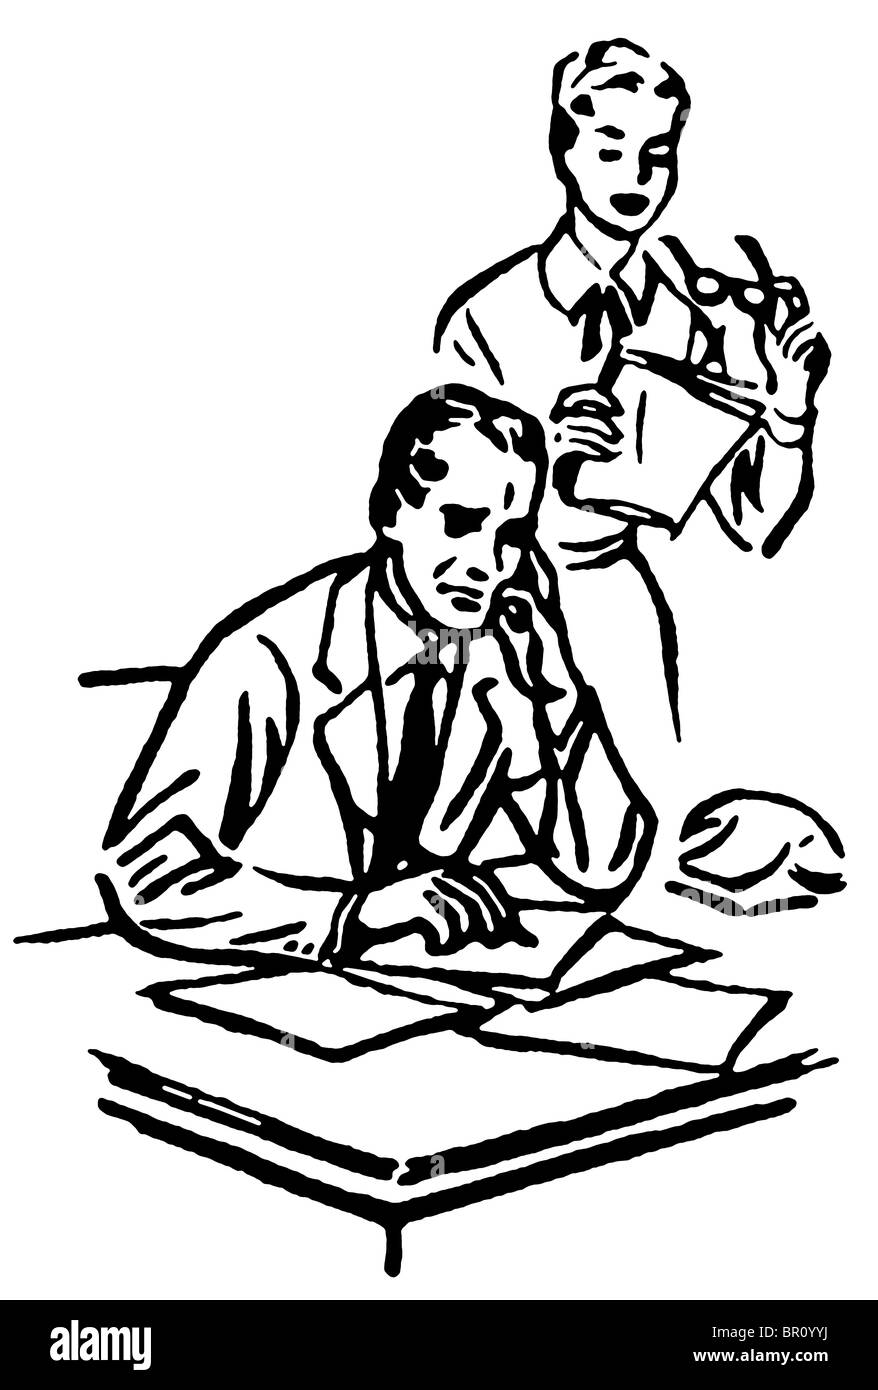 Eine schwarz-weiß Version eines Geschäftsmannes mit seiner Sekretärin überragt ihn an seinem Schreibtisch arbeiten Stockfoto